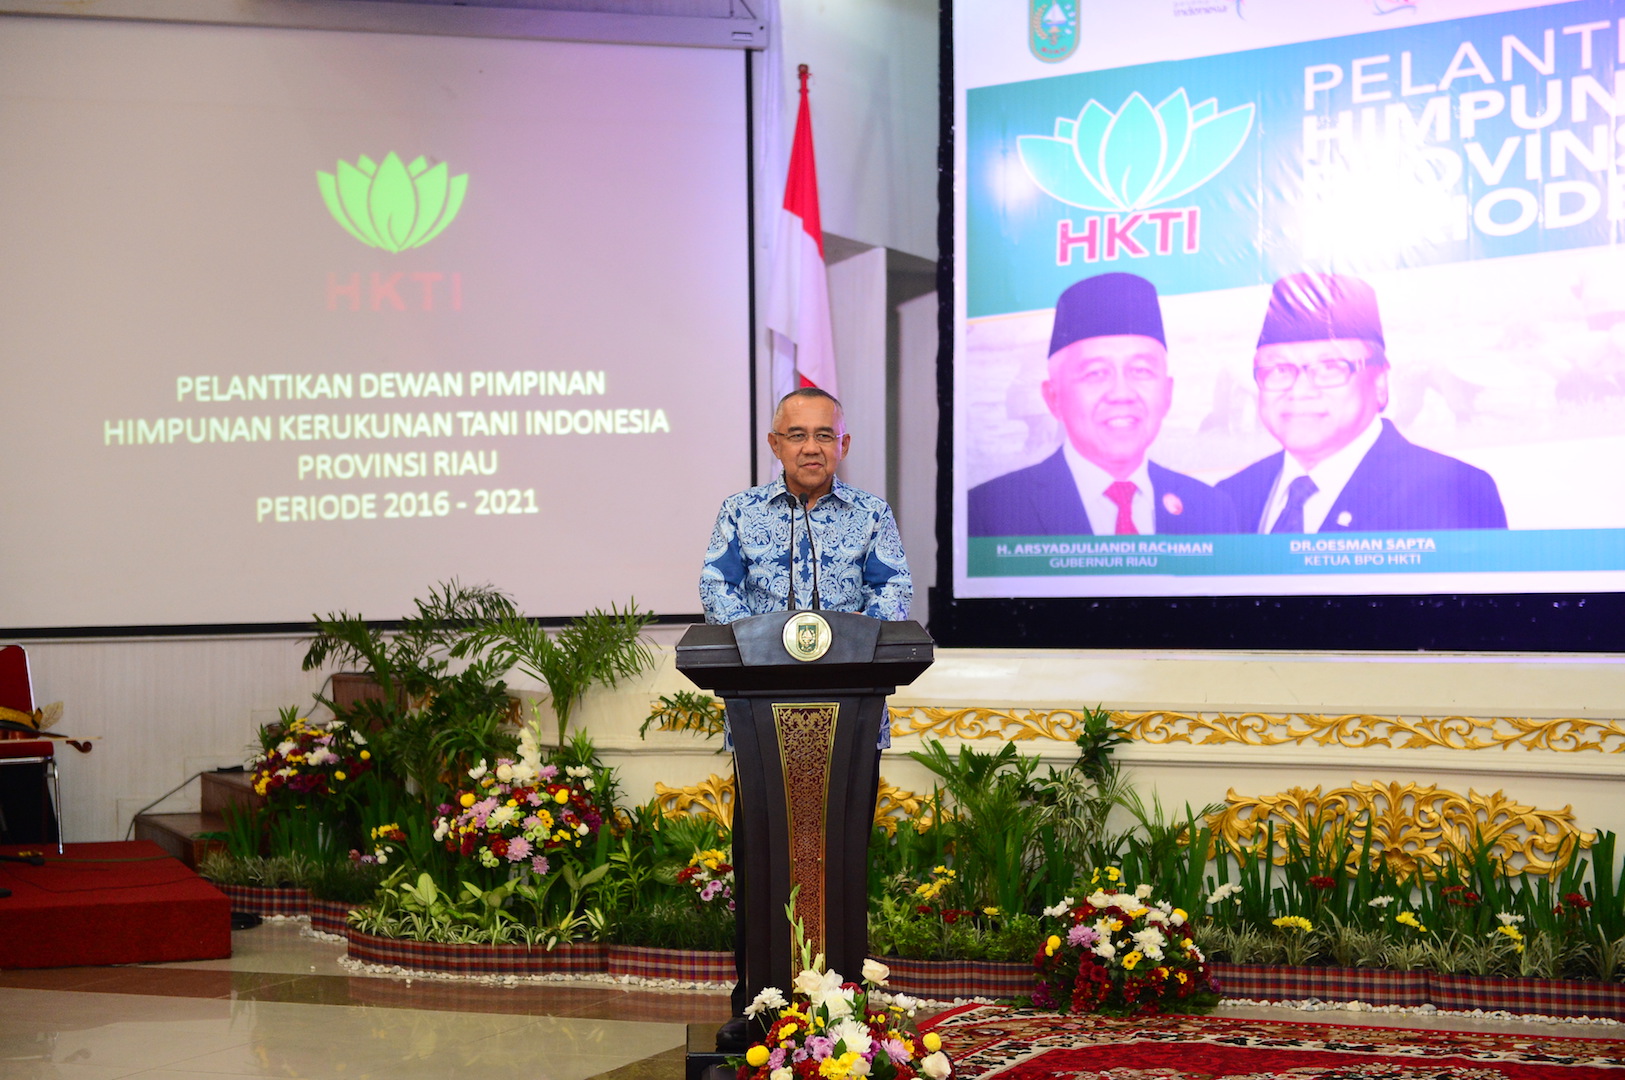 Permalink ke Pelantikan Dewan Pimpinan HKTI Prov Riau 2016-2021